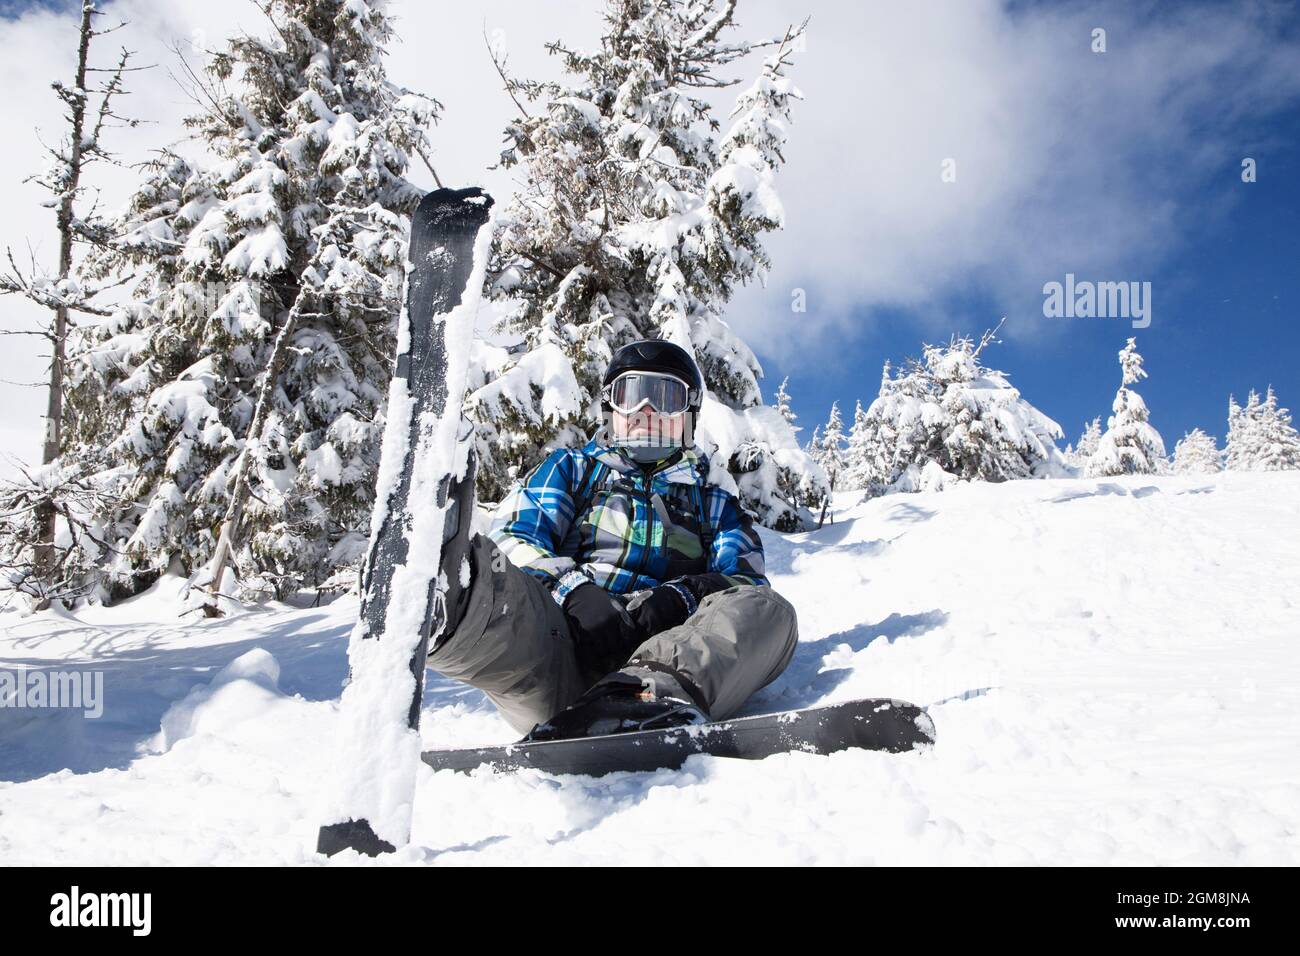 uomo di circa 35-40 anni in abiti invernali sugli sci si siede nella neve in una giornata invernale soleggiata. sciatore godendo le vacanze invernali su una pista nevosa, relax Foto Stock